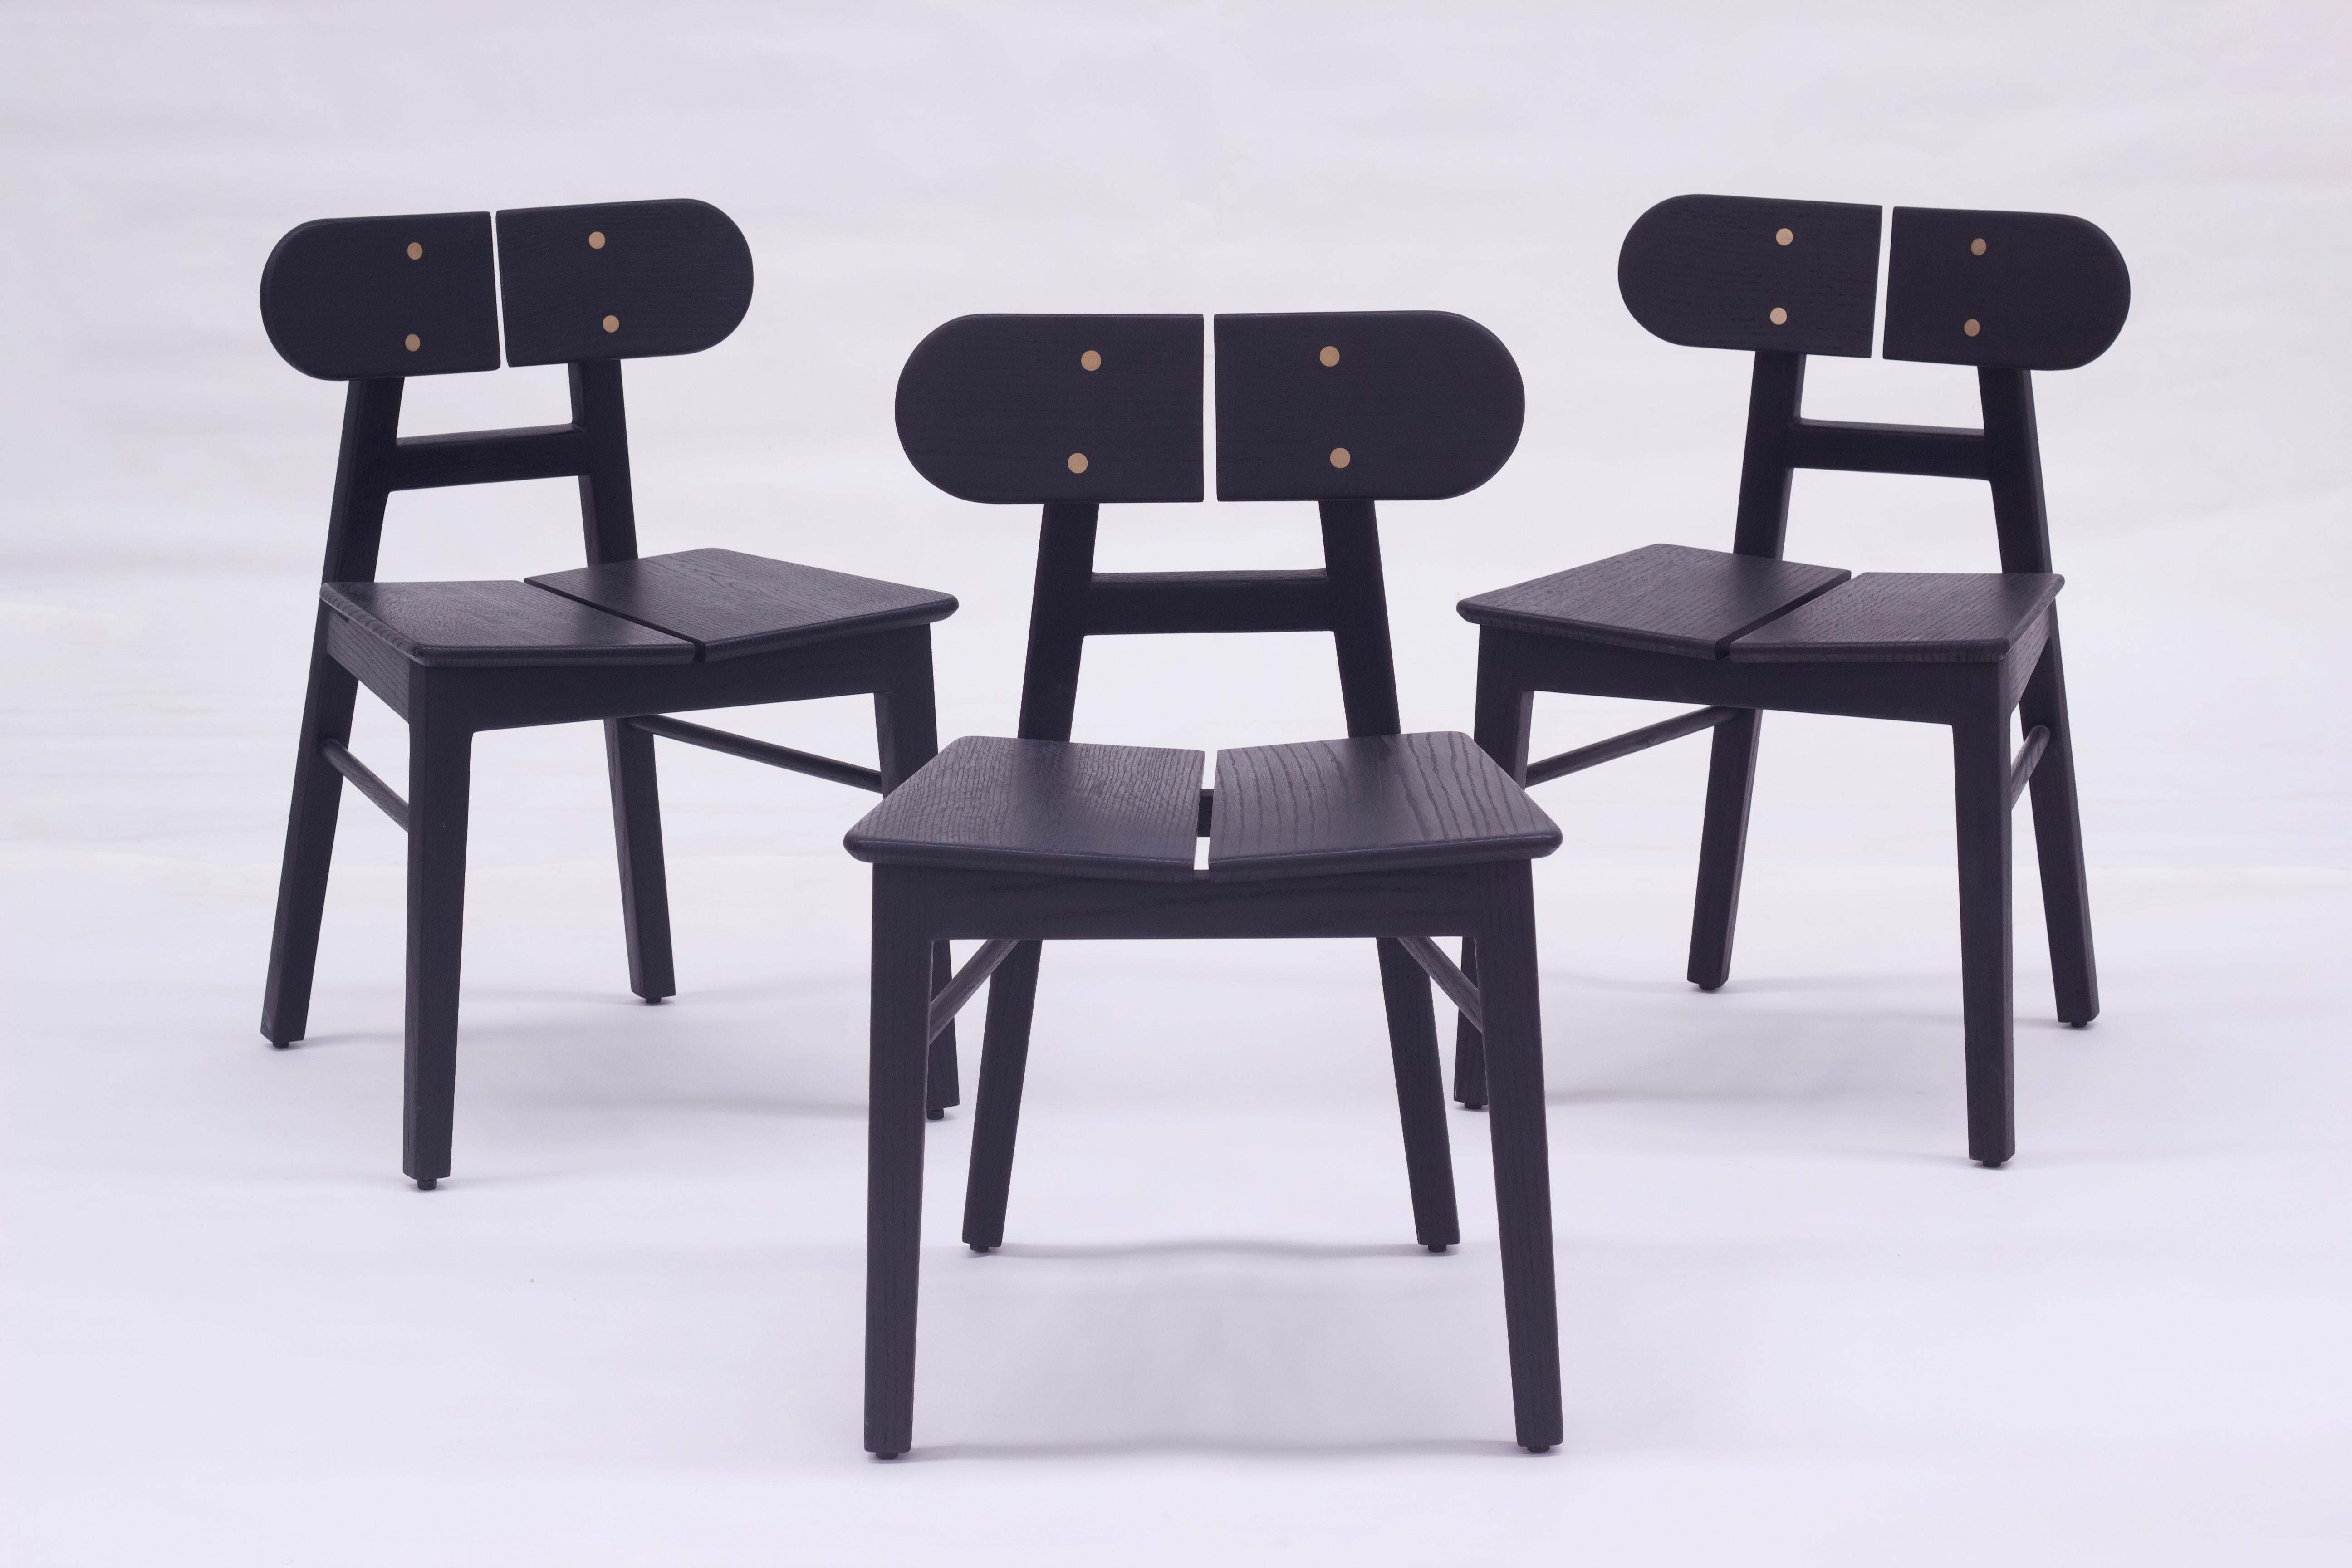 Die 4 schwarzen Stühle aus massivem Eichenholz bieten Komfort und eine zeitlose Ästhetik. Das Design des BUTTERFLY-Stuhls ist von der Schönheit eines Schmetterlings inspiriert und wurde mit einer Designphilosophie des bewussten Minimalismus